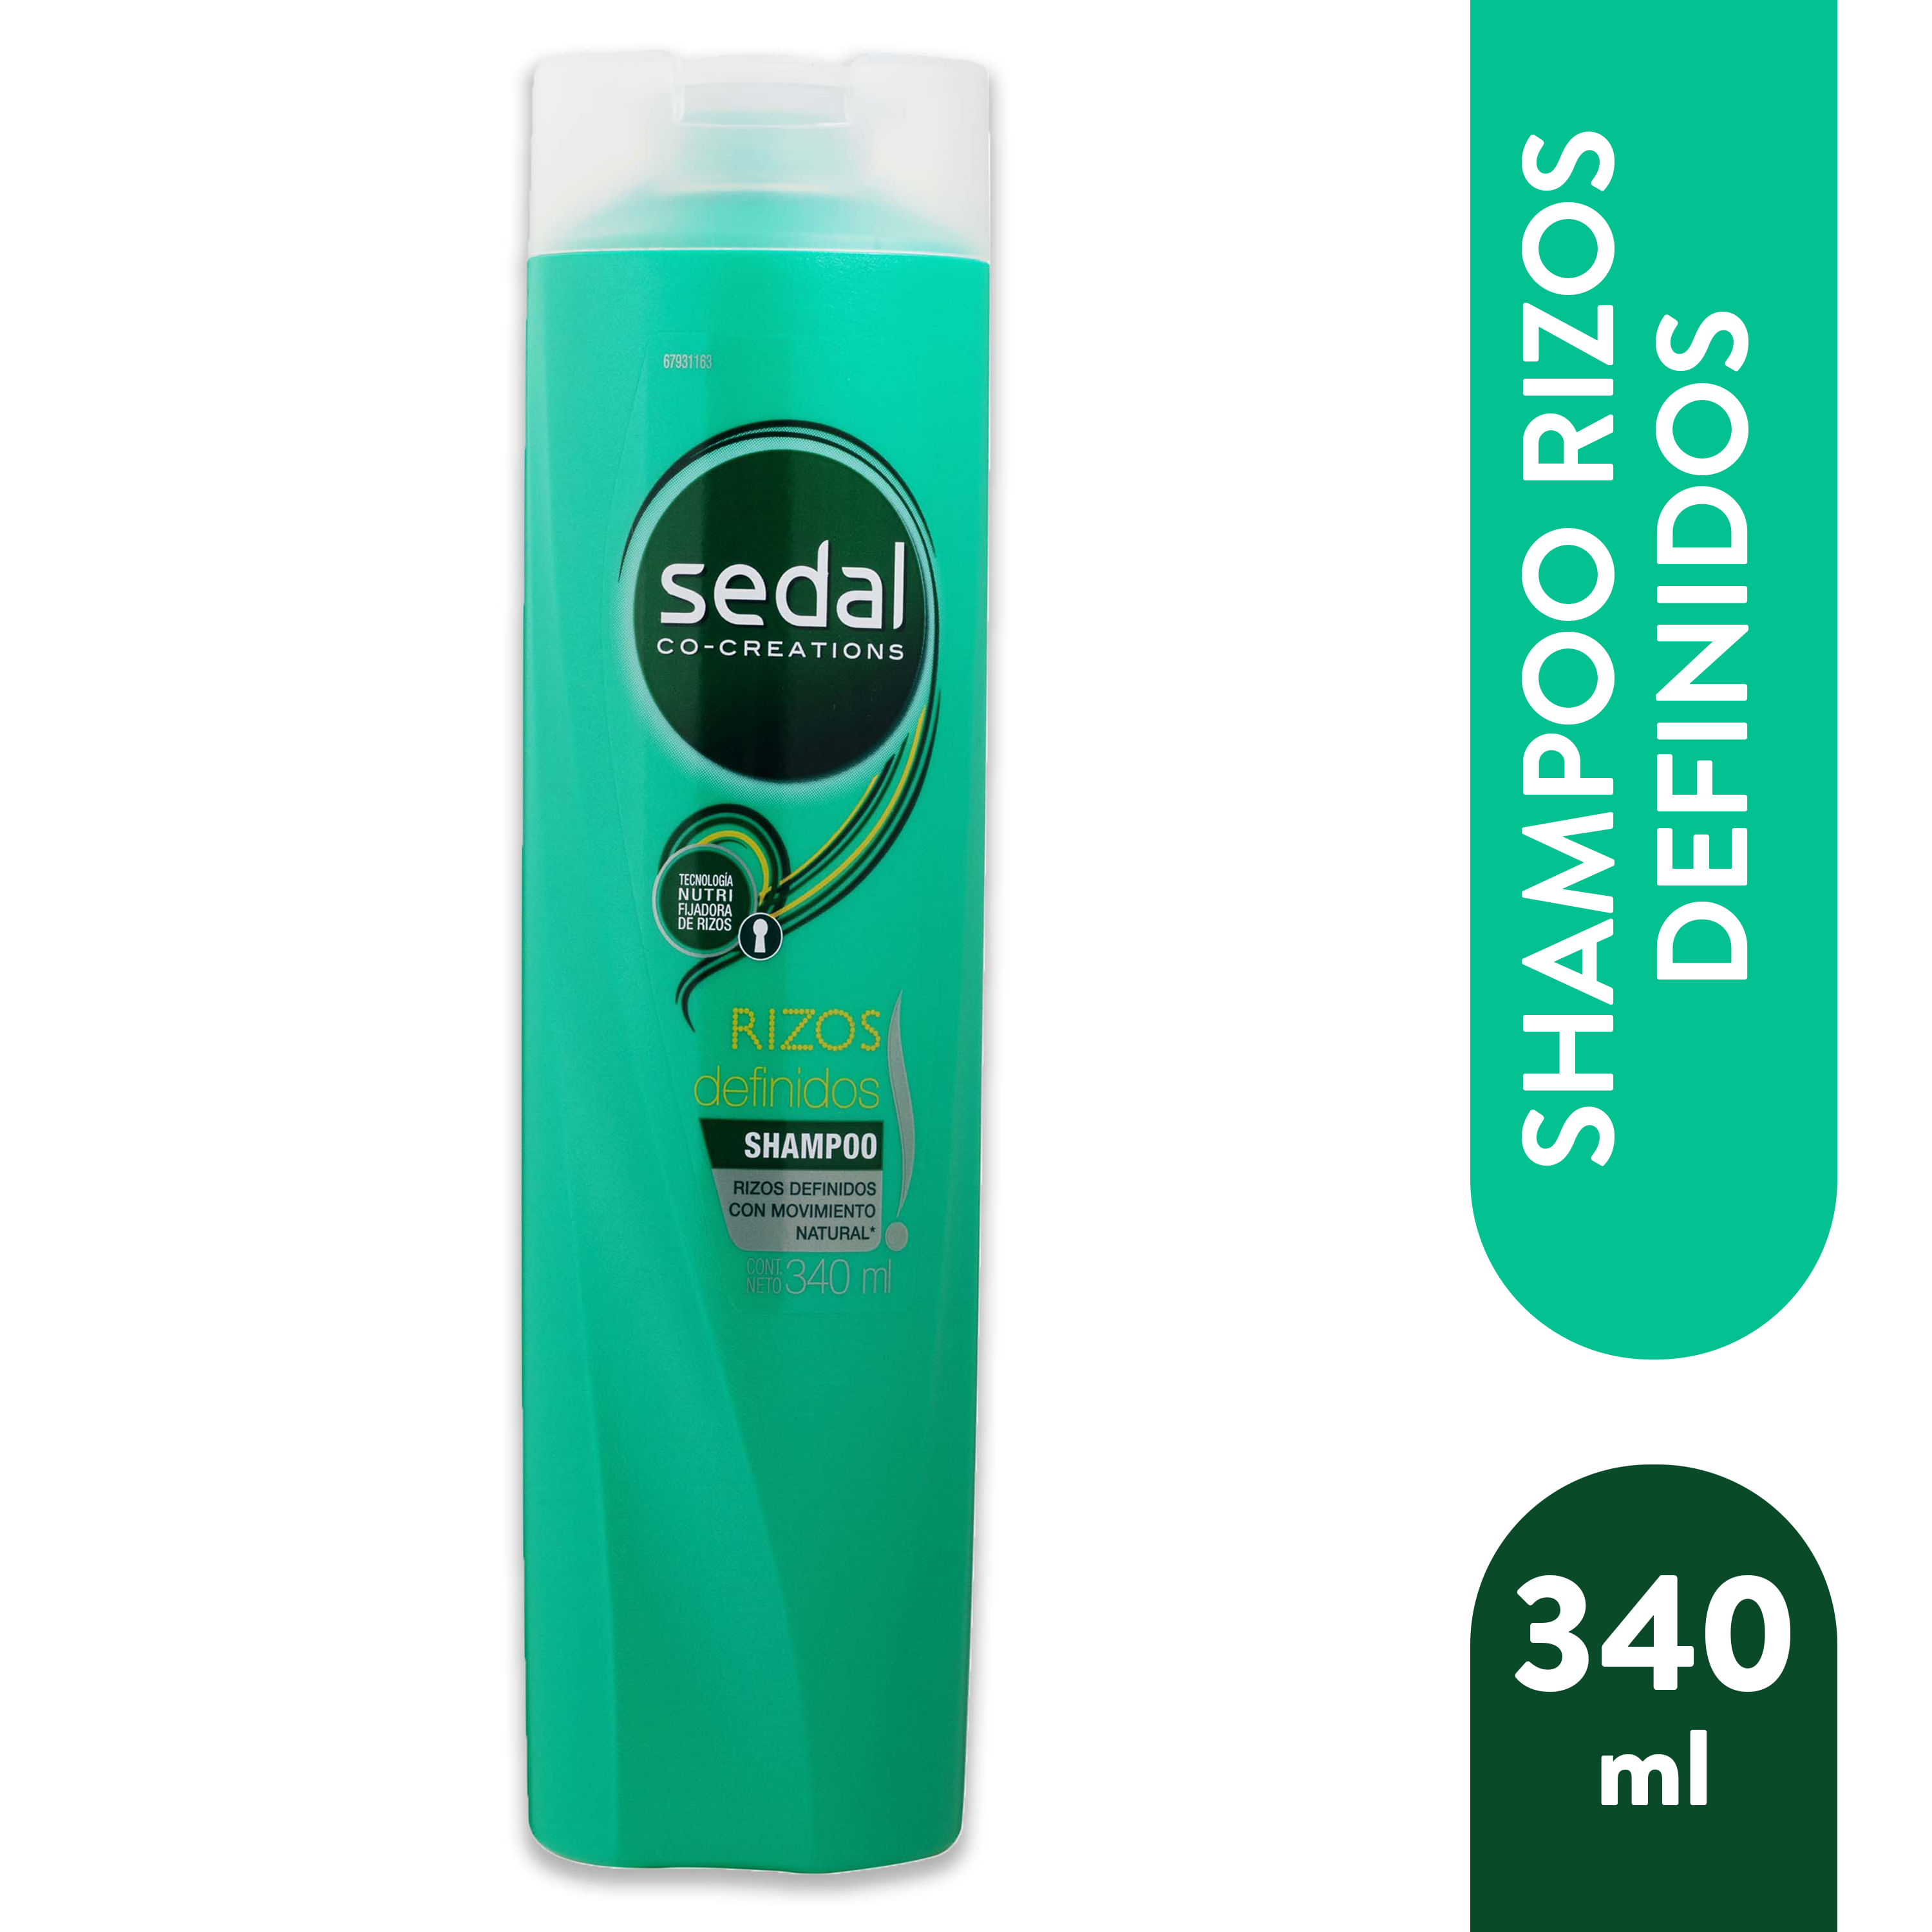 Shampoo-Sedal-Rizos-Definidos-340ml-1-1998